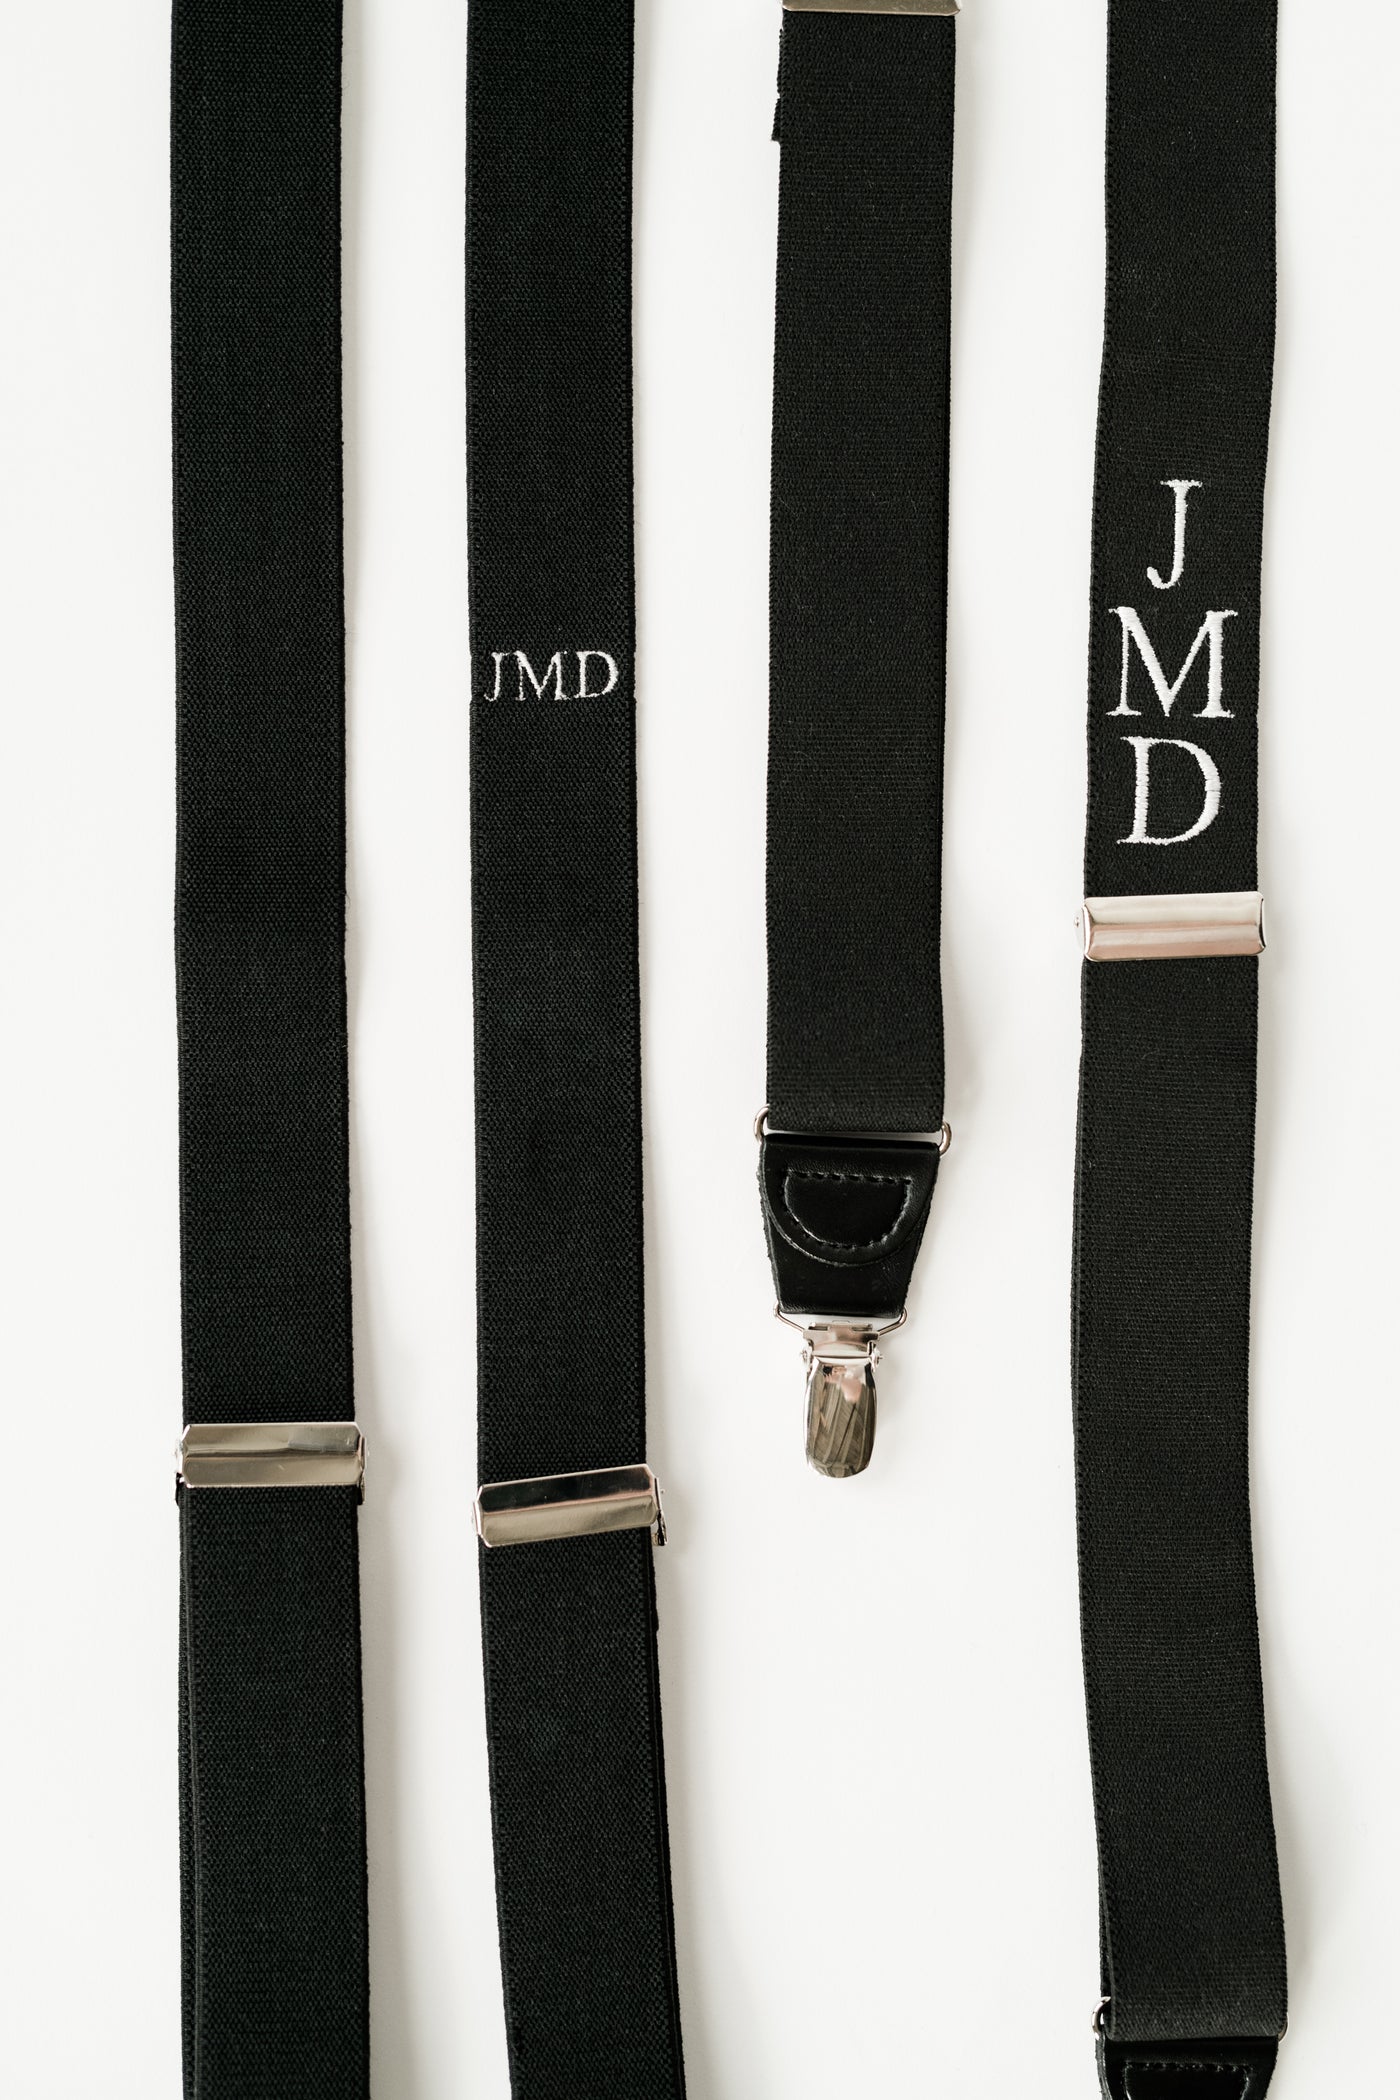 horizontal verses vertical monogram suspenders